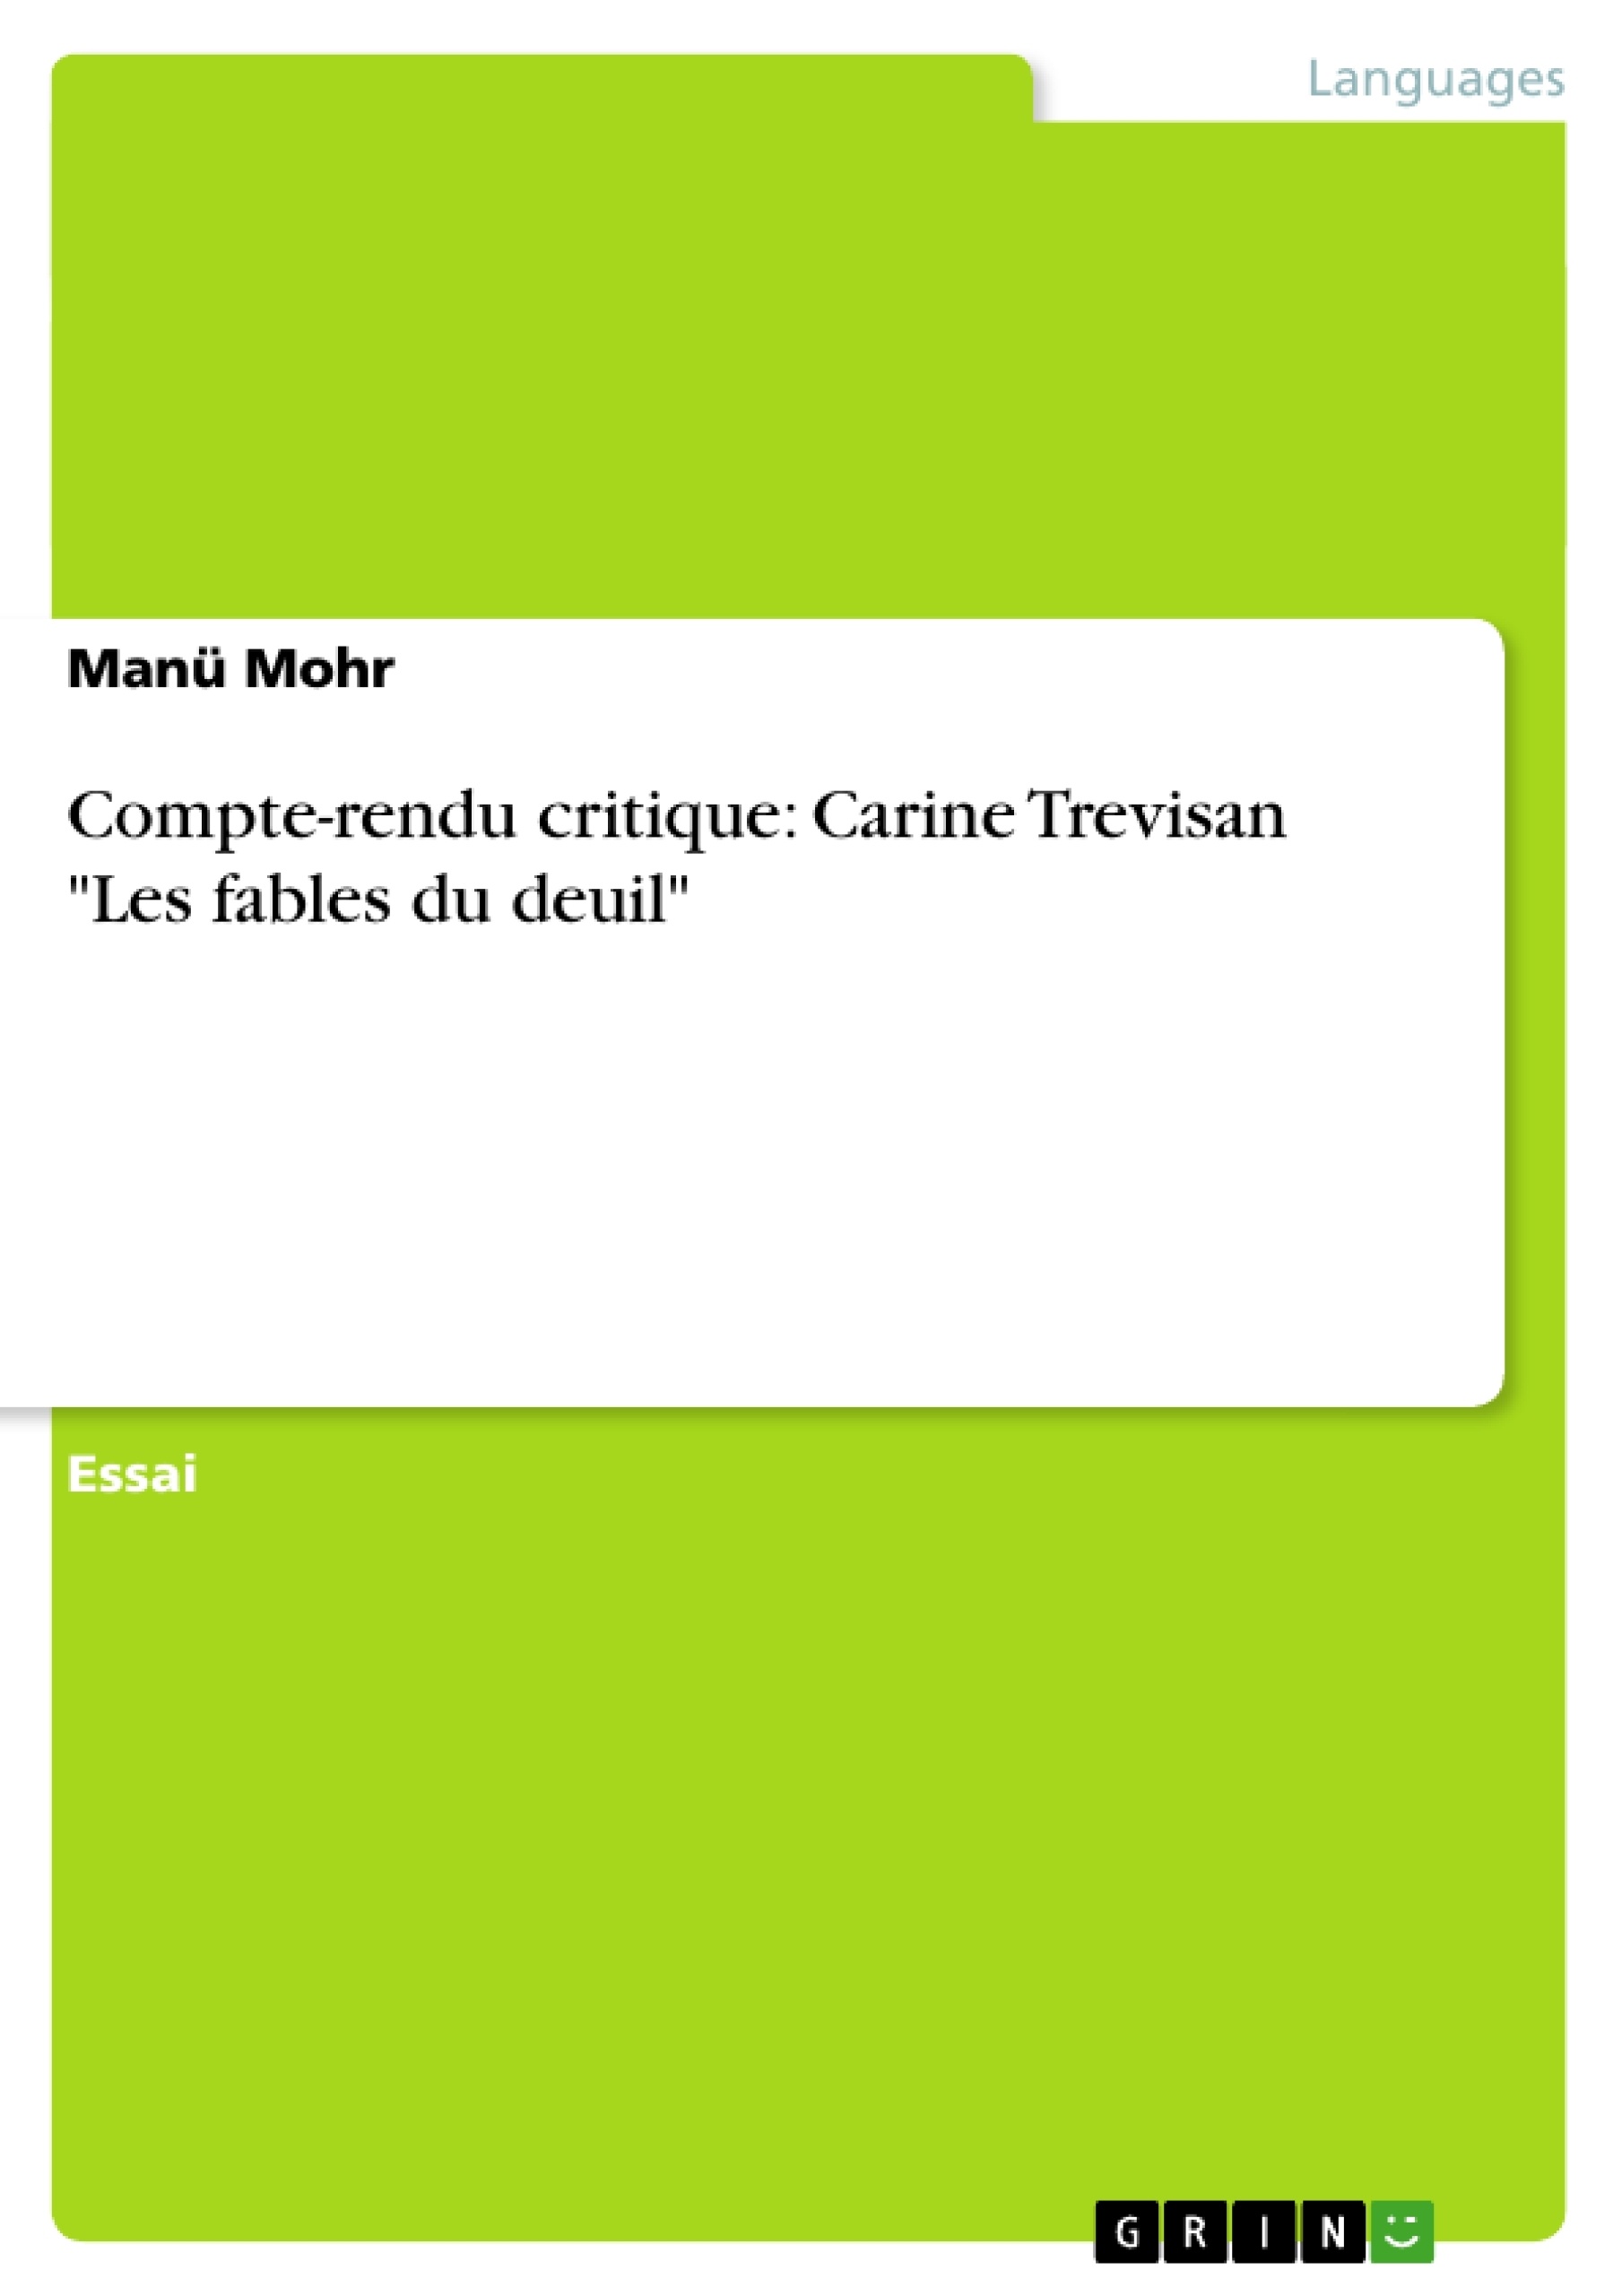 Título: Compte-rendu critique: Carine Trevisan "Les fables du deuil"